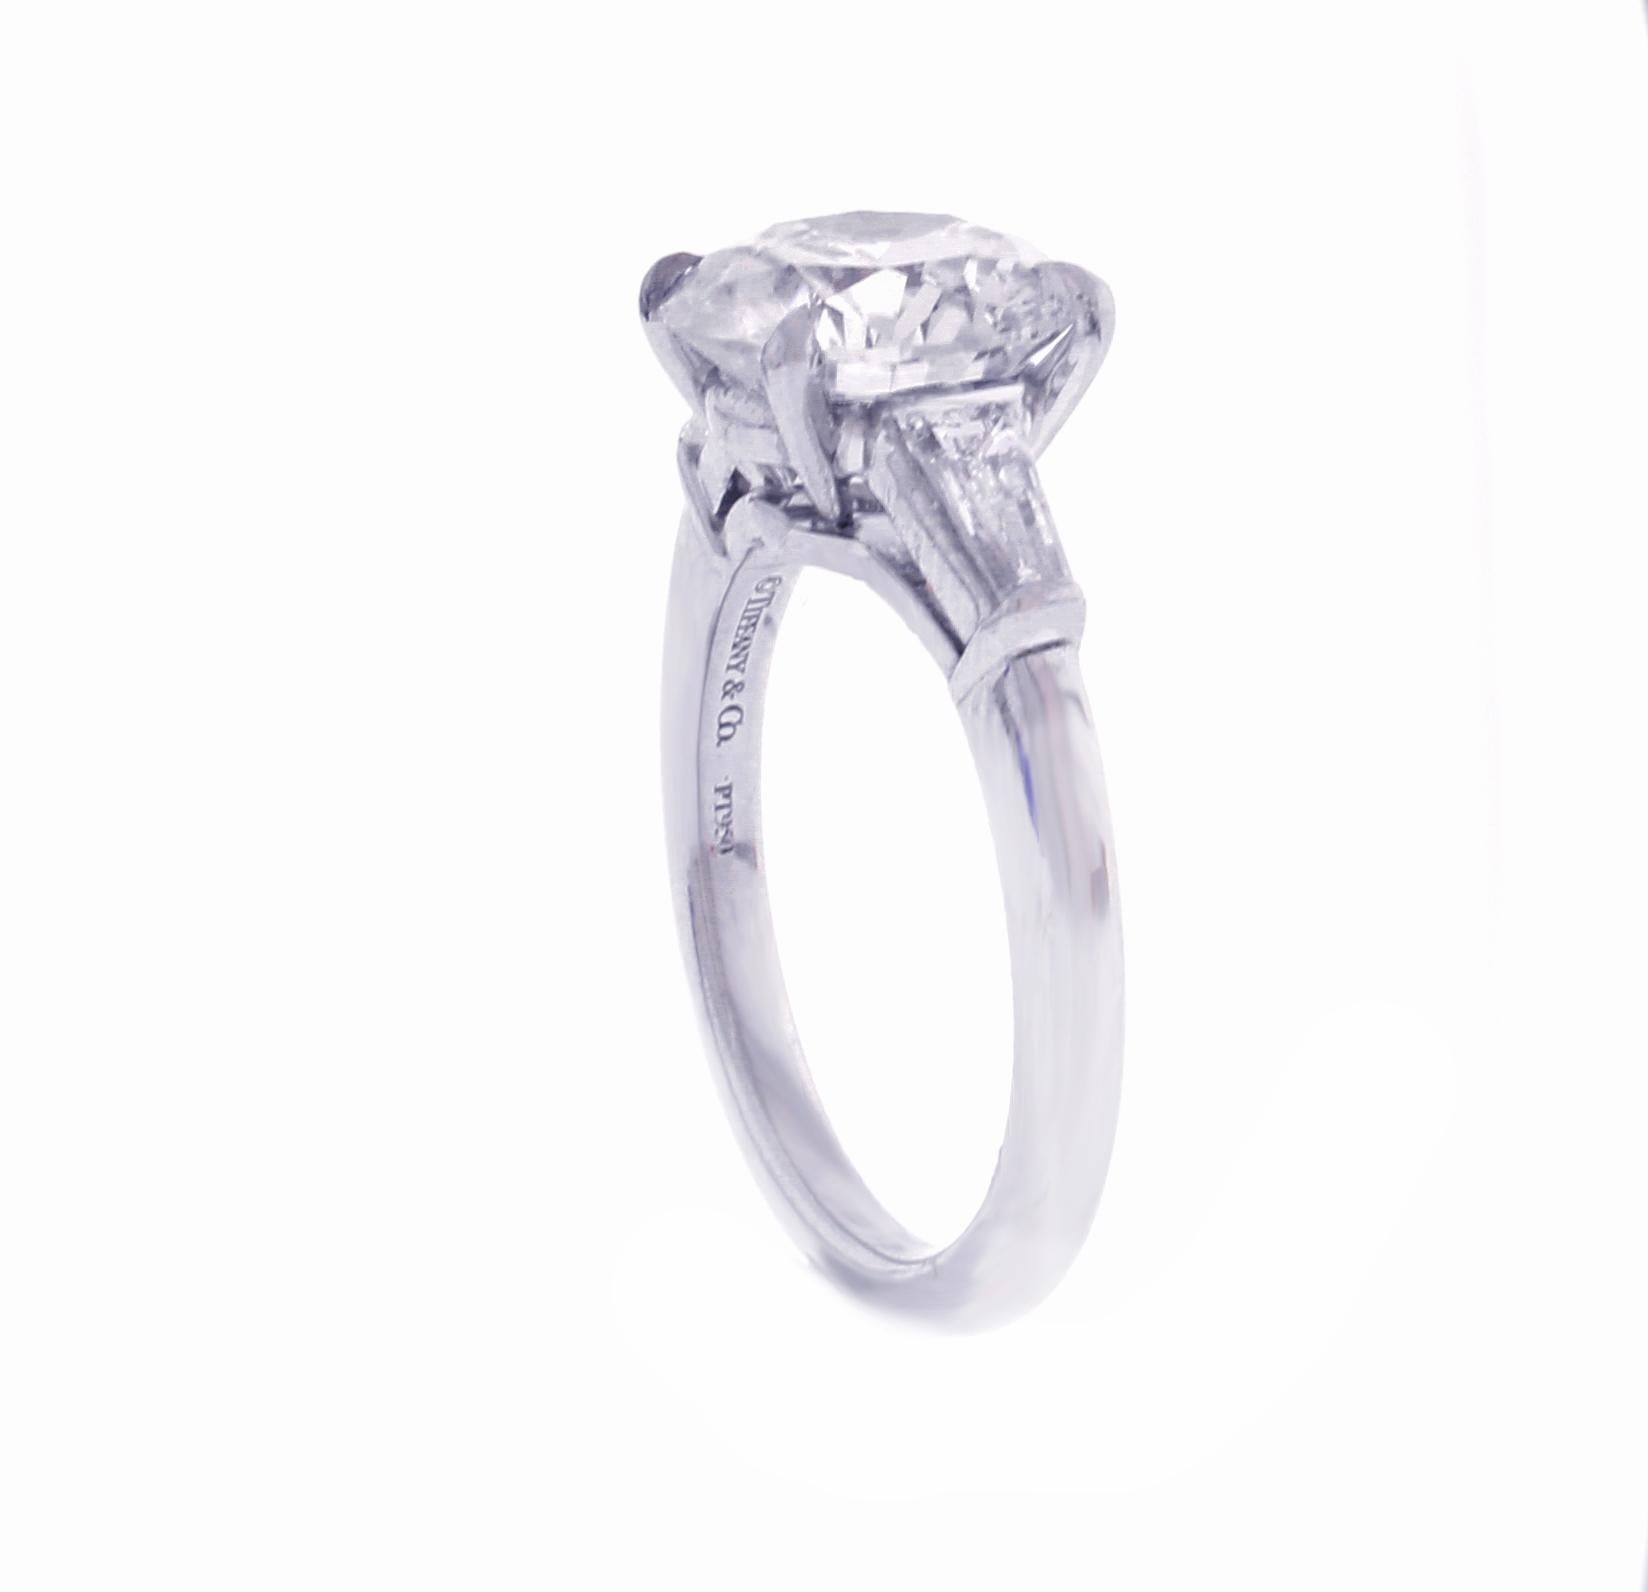 2.27 carat diamond ring price